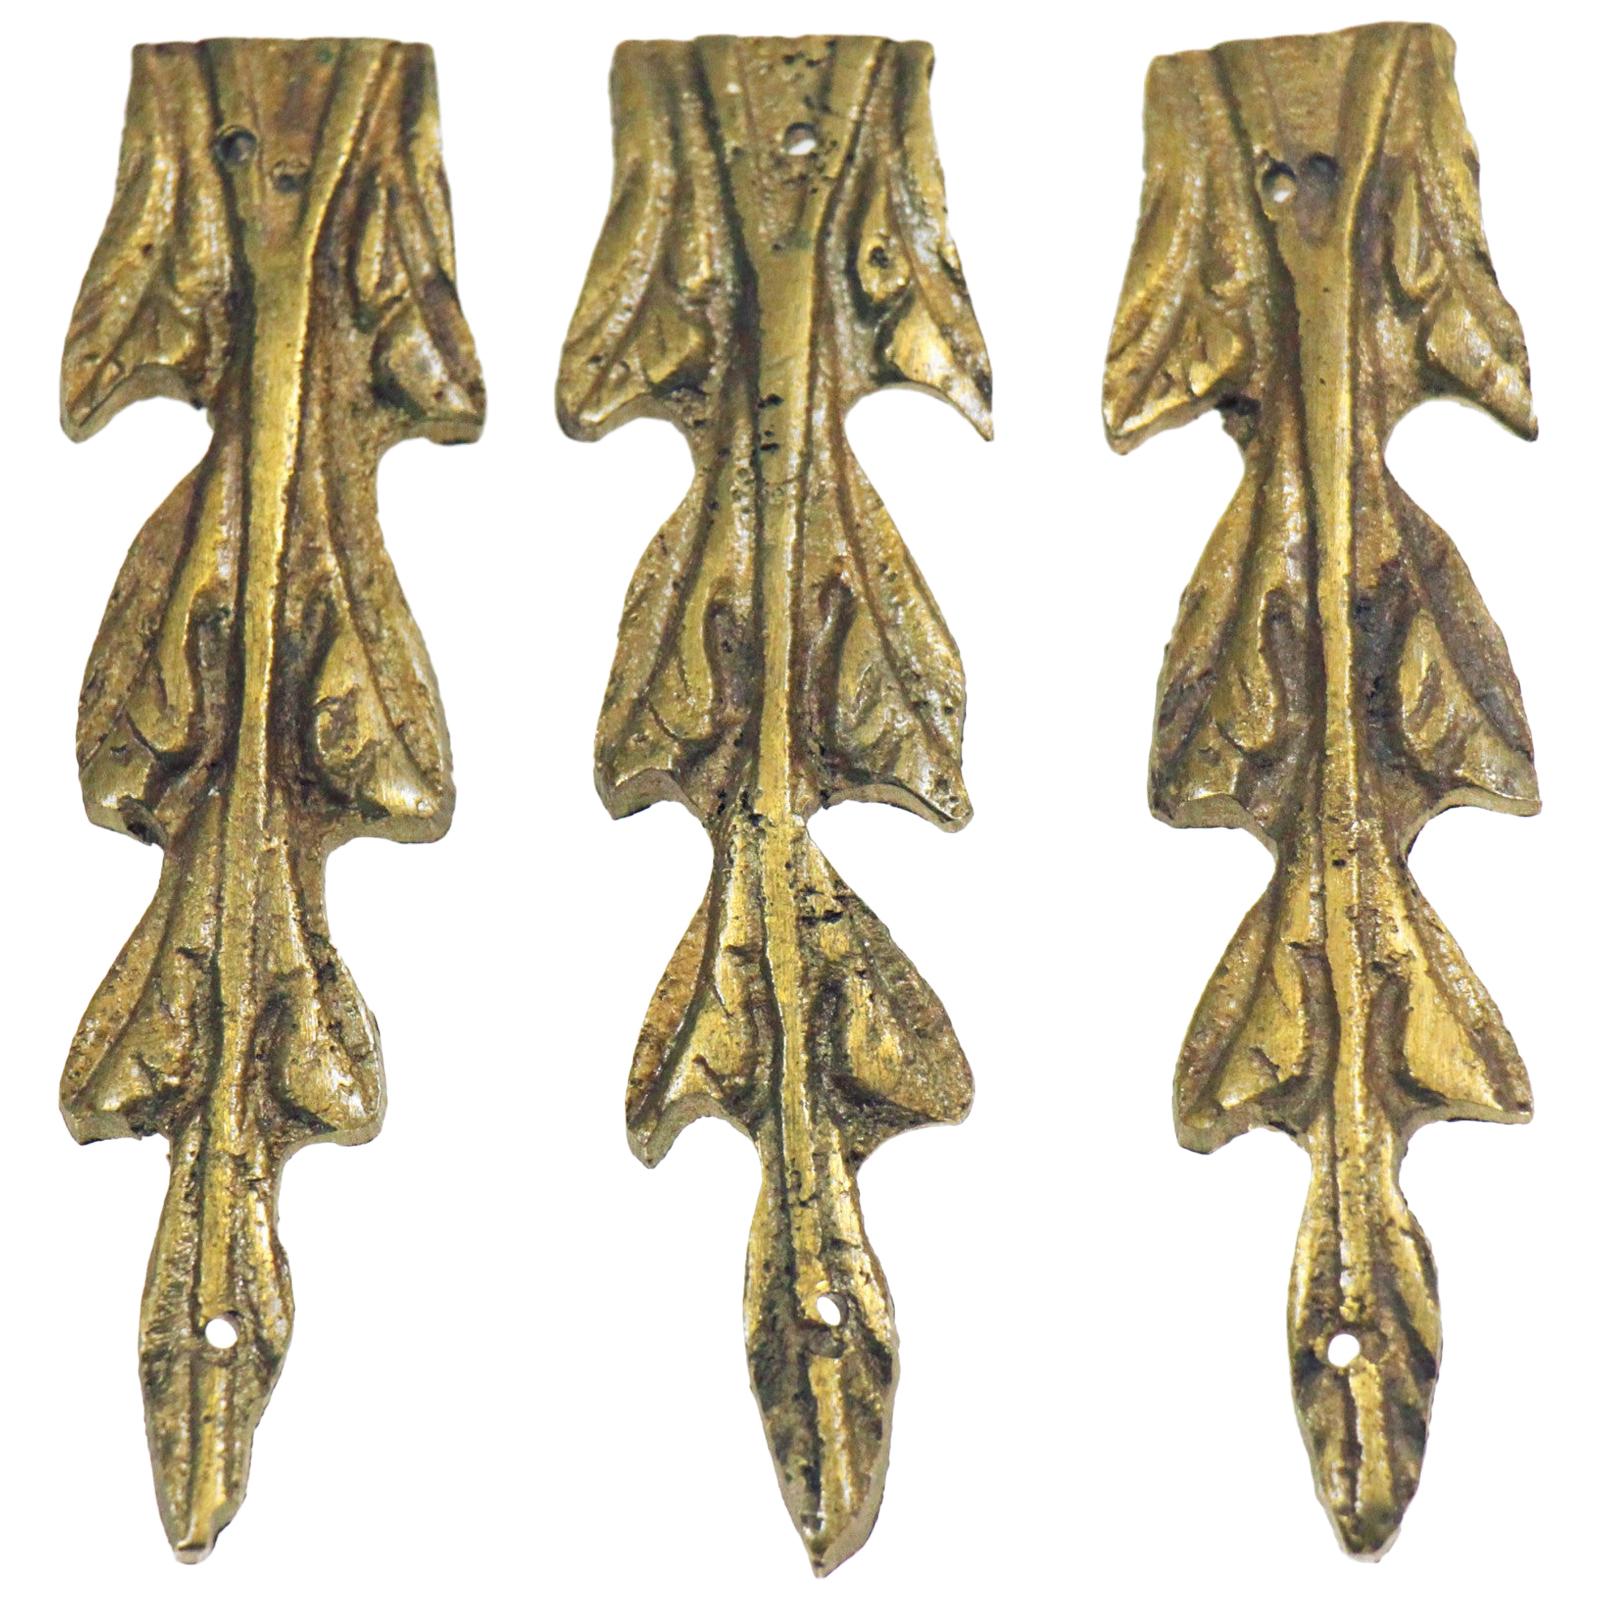 Antique Bronze Leaves Furniture Applique Set from Belgium